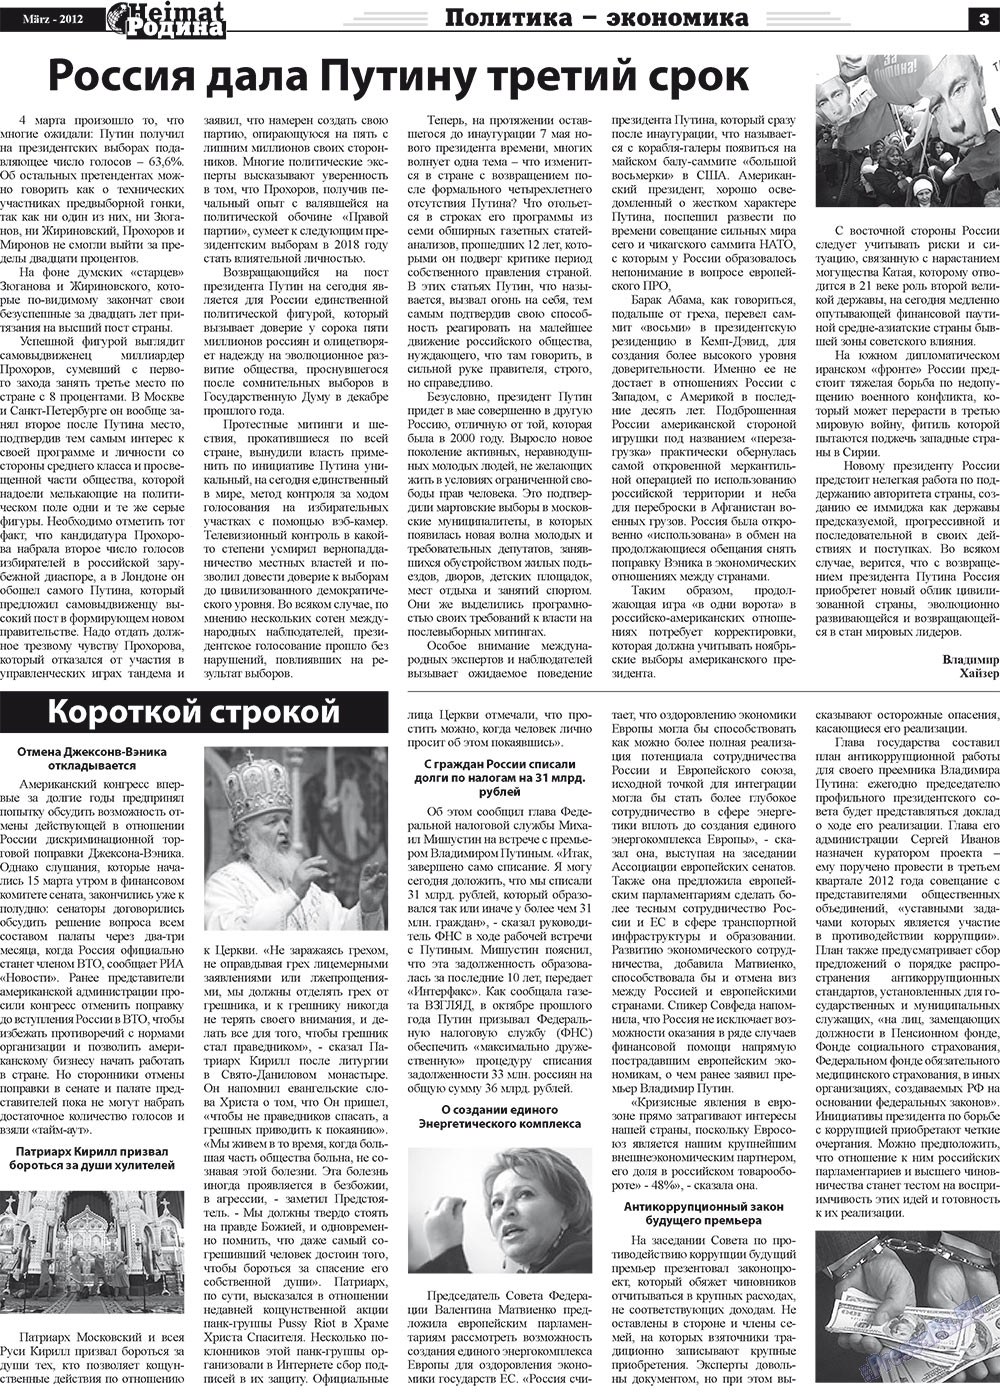 Heimat-Родина (газета). 2012 год, номер 3, стр. 3